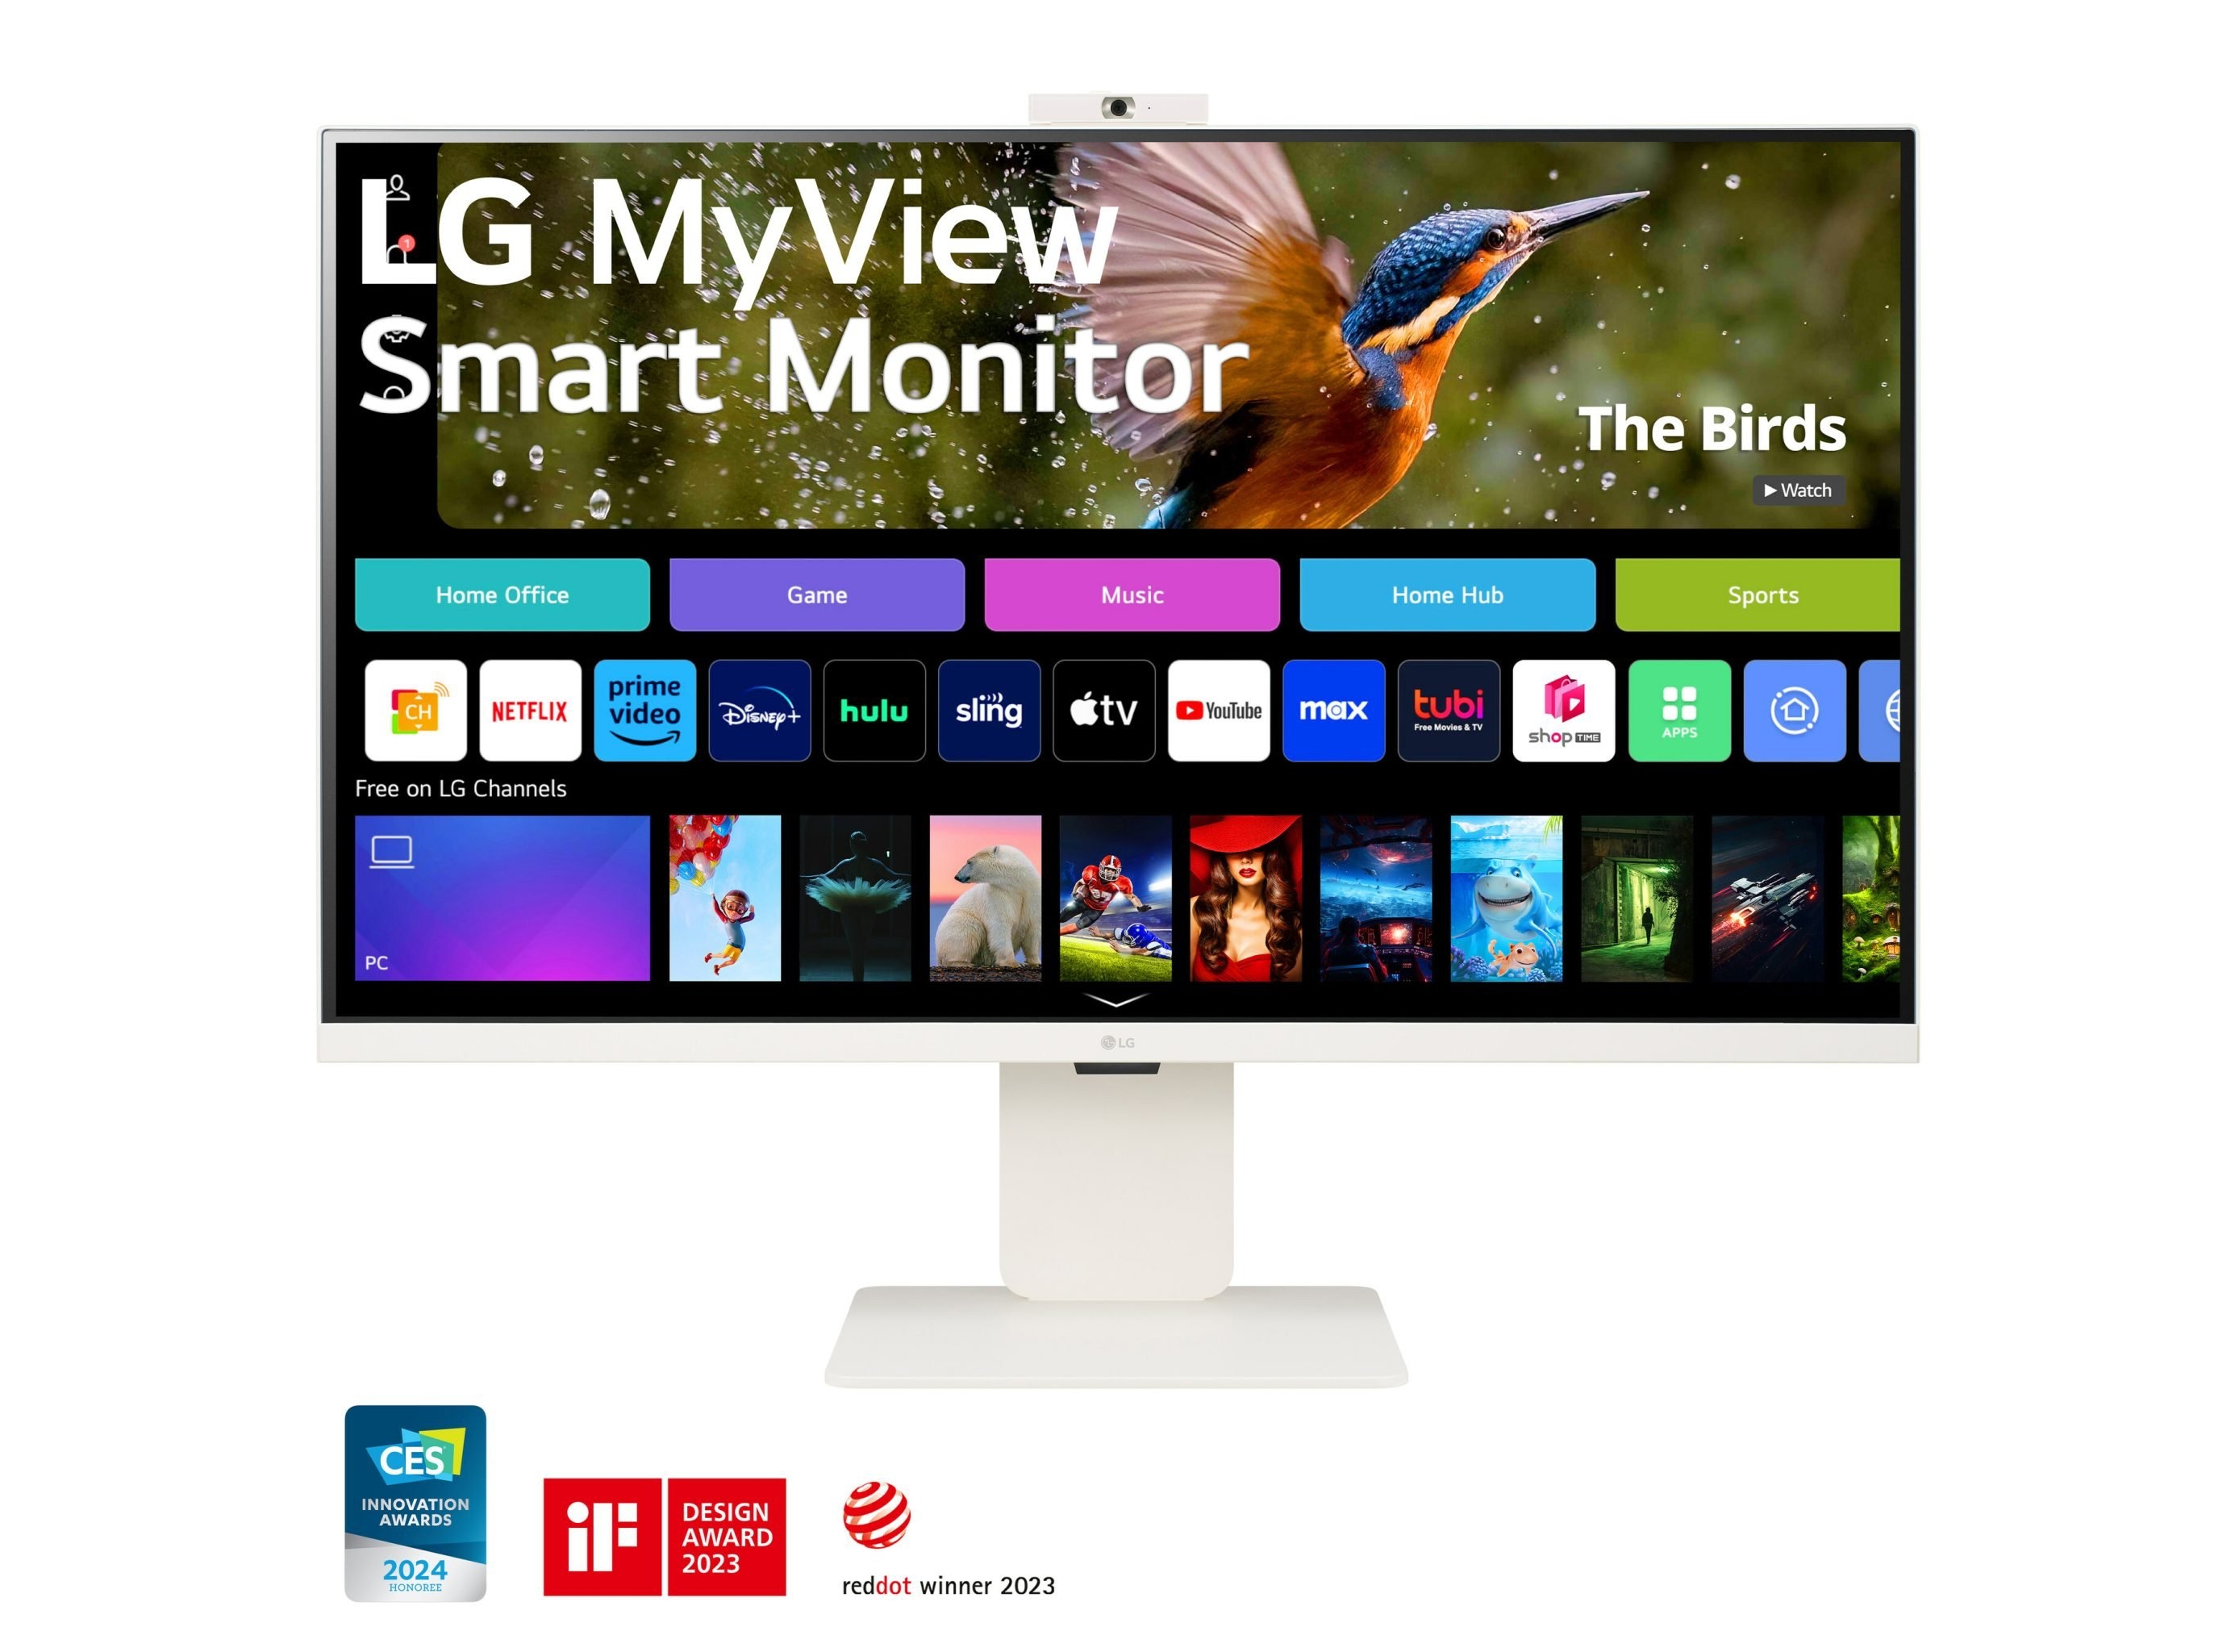 LG zapowiedziało linię inteligentnych monitorów MyView z ekranami do 4K, AirPlay 2 i webOS na pokładzie, w cenie od 199 USD